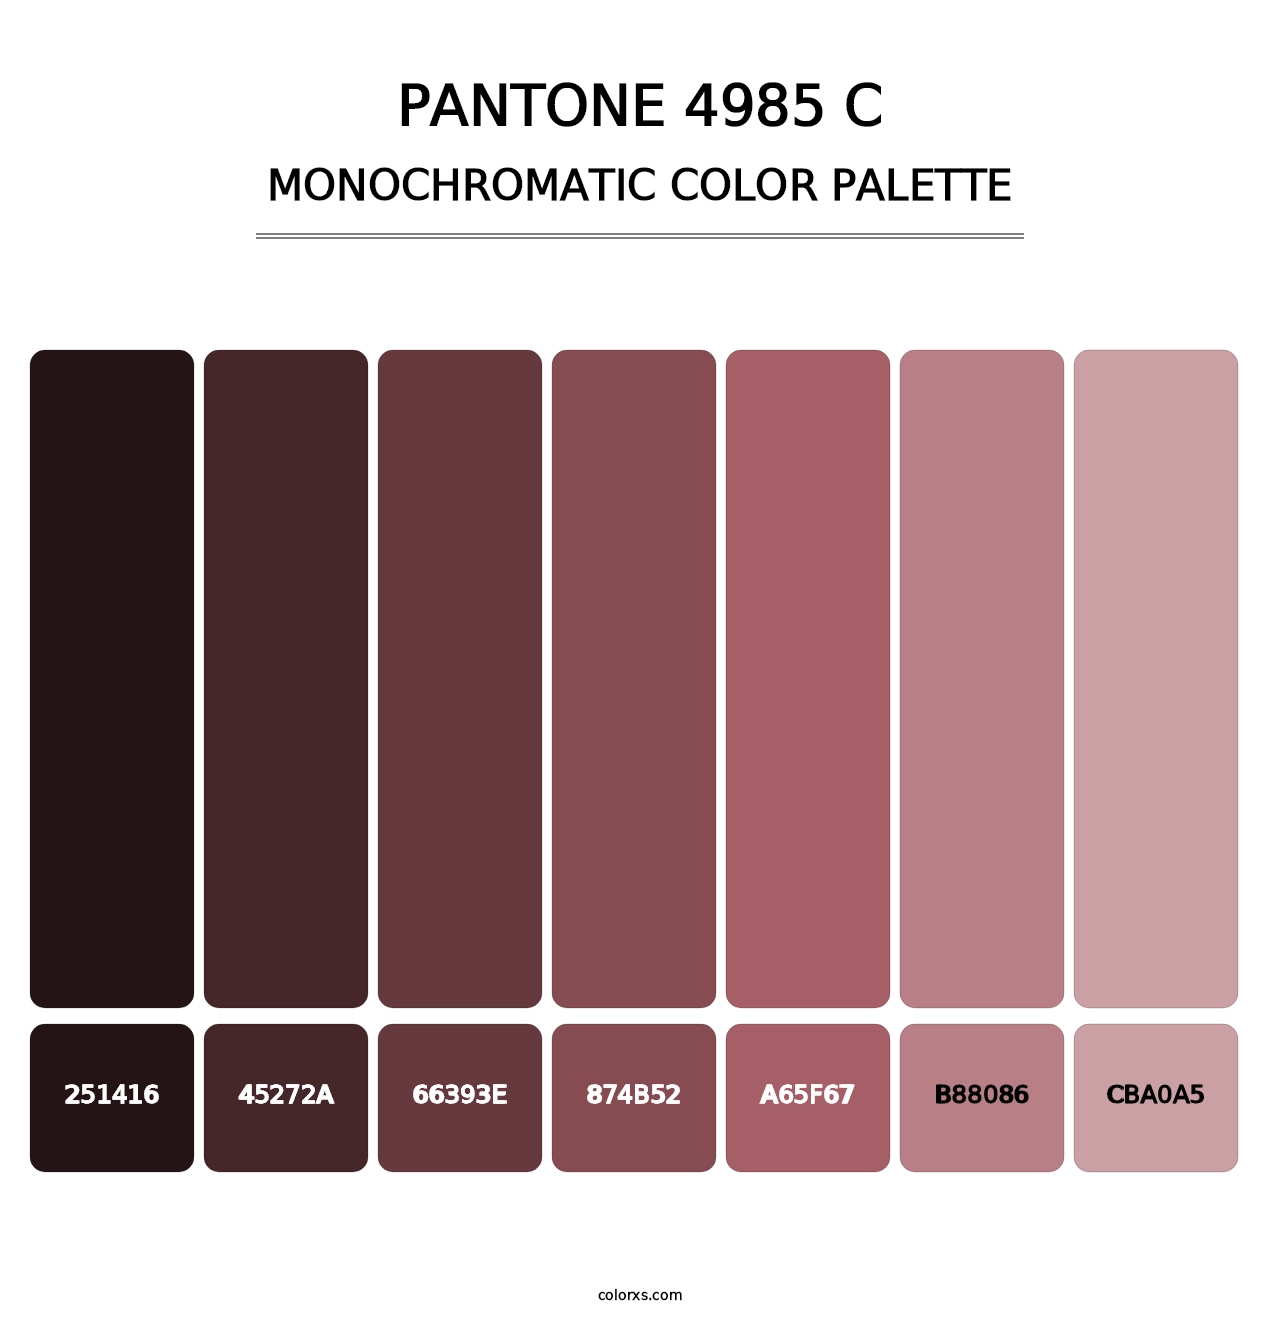 PANTONE 4985 C - Monochromatic Color Palette